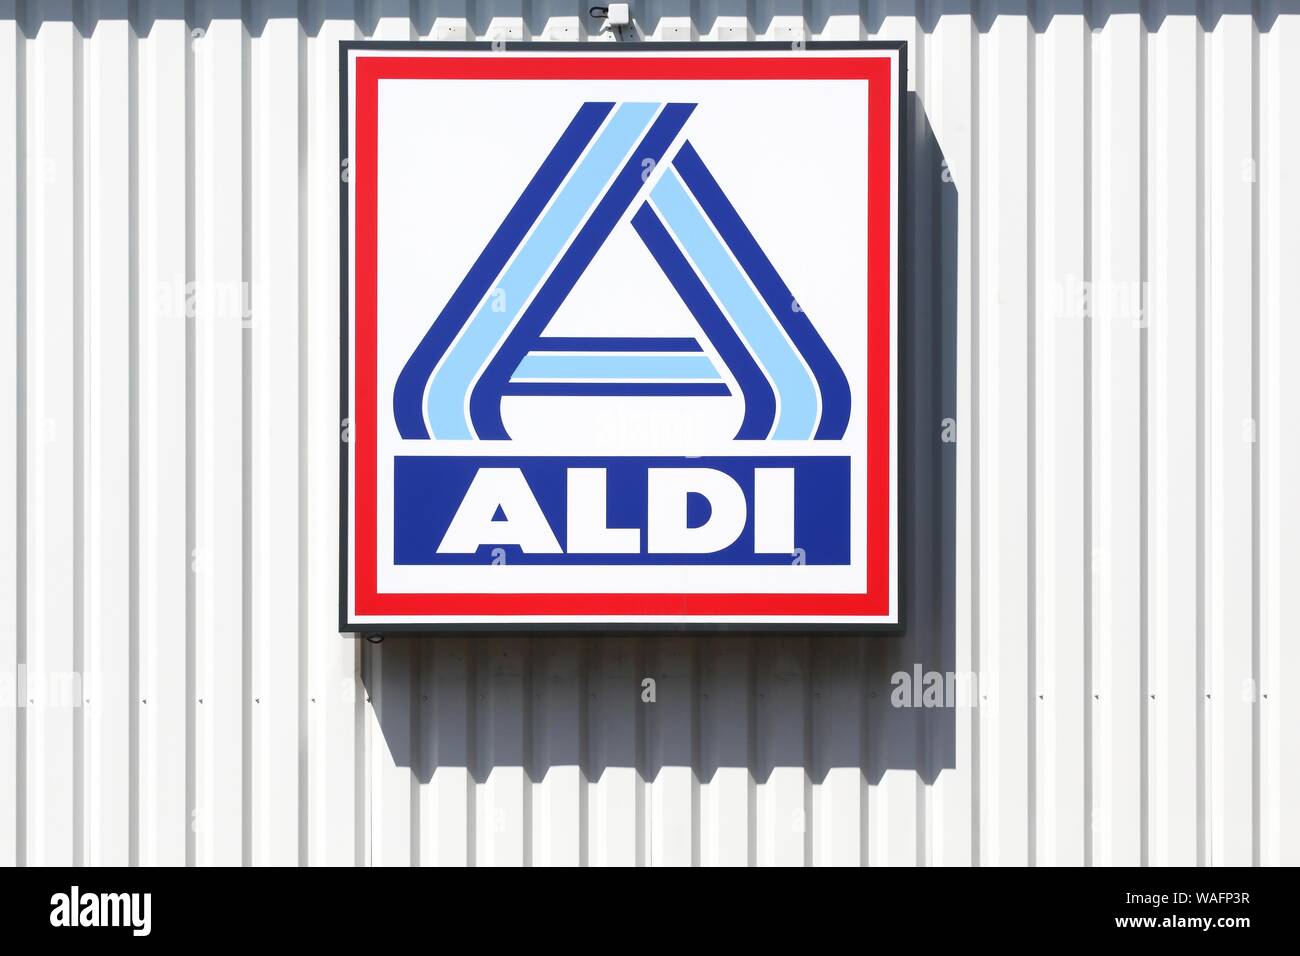 Civrieux, France - 9 août 2019 : Aldi logo sur un mur. Aldi est un leader mondial de la chaîne de supermarchés discount avec plus de 10 000 magasins dans 18 pays Banque D'Images